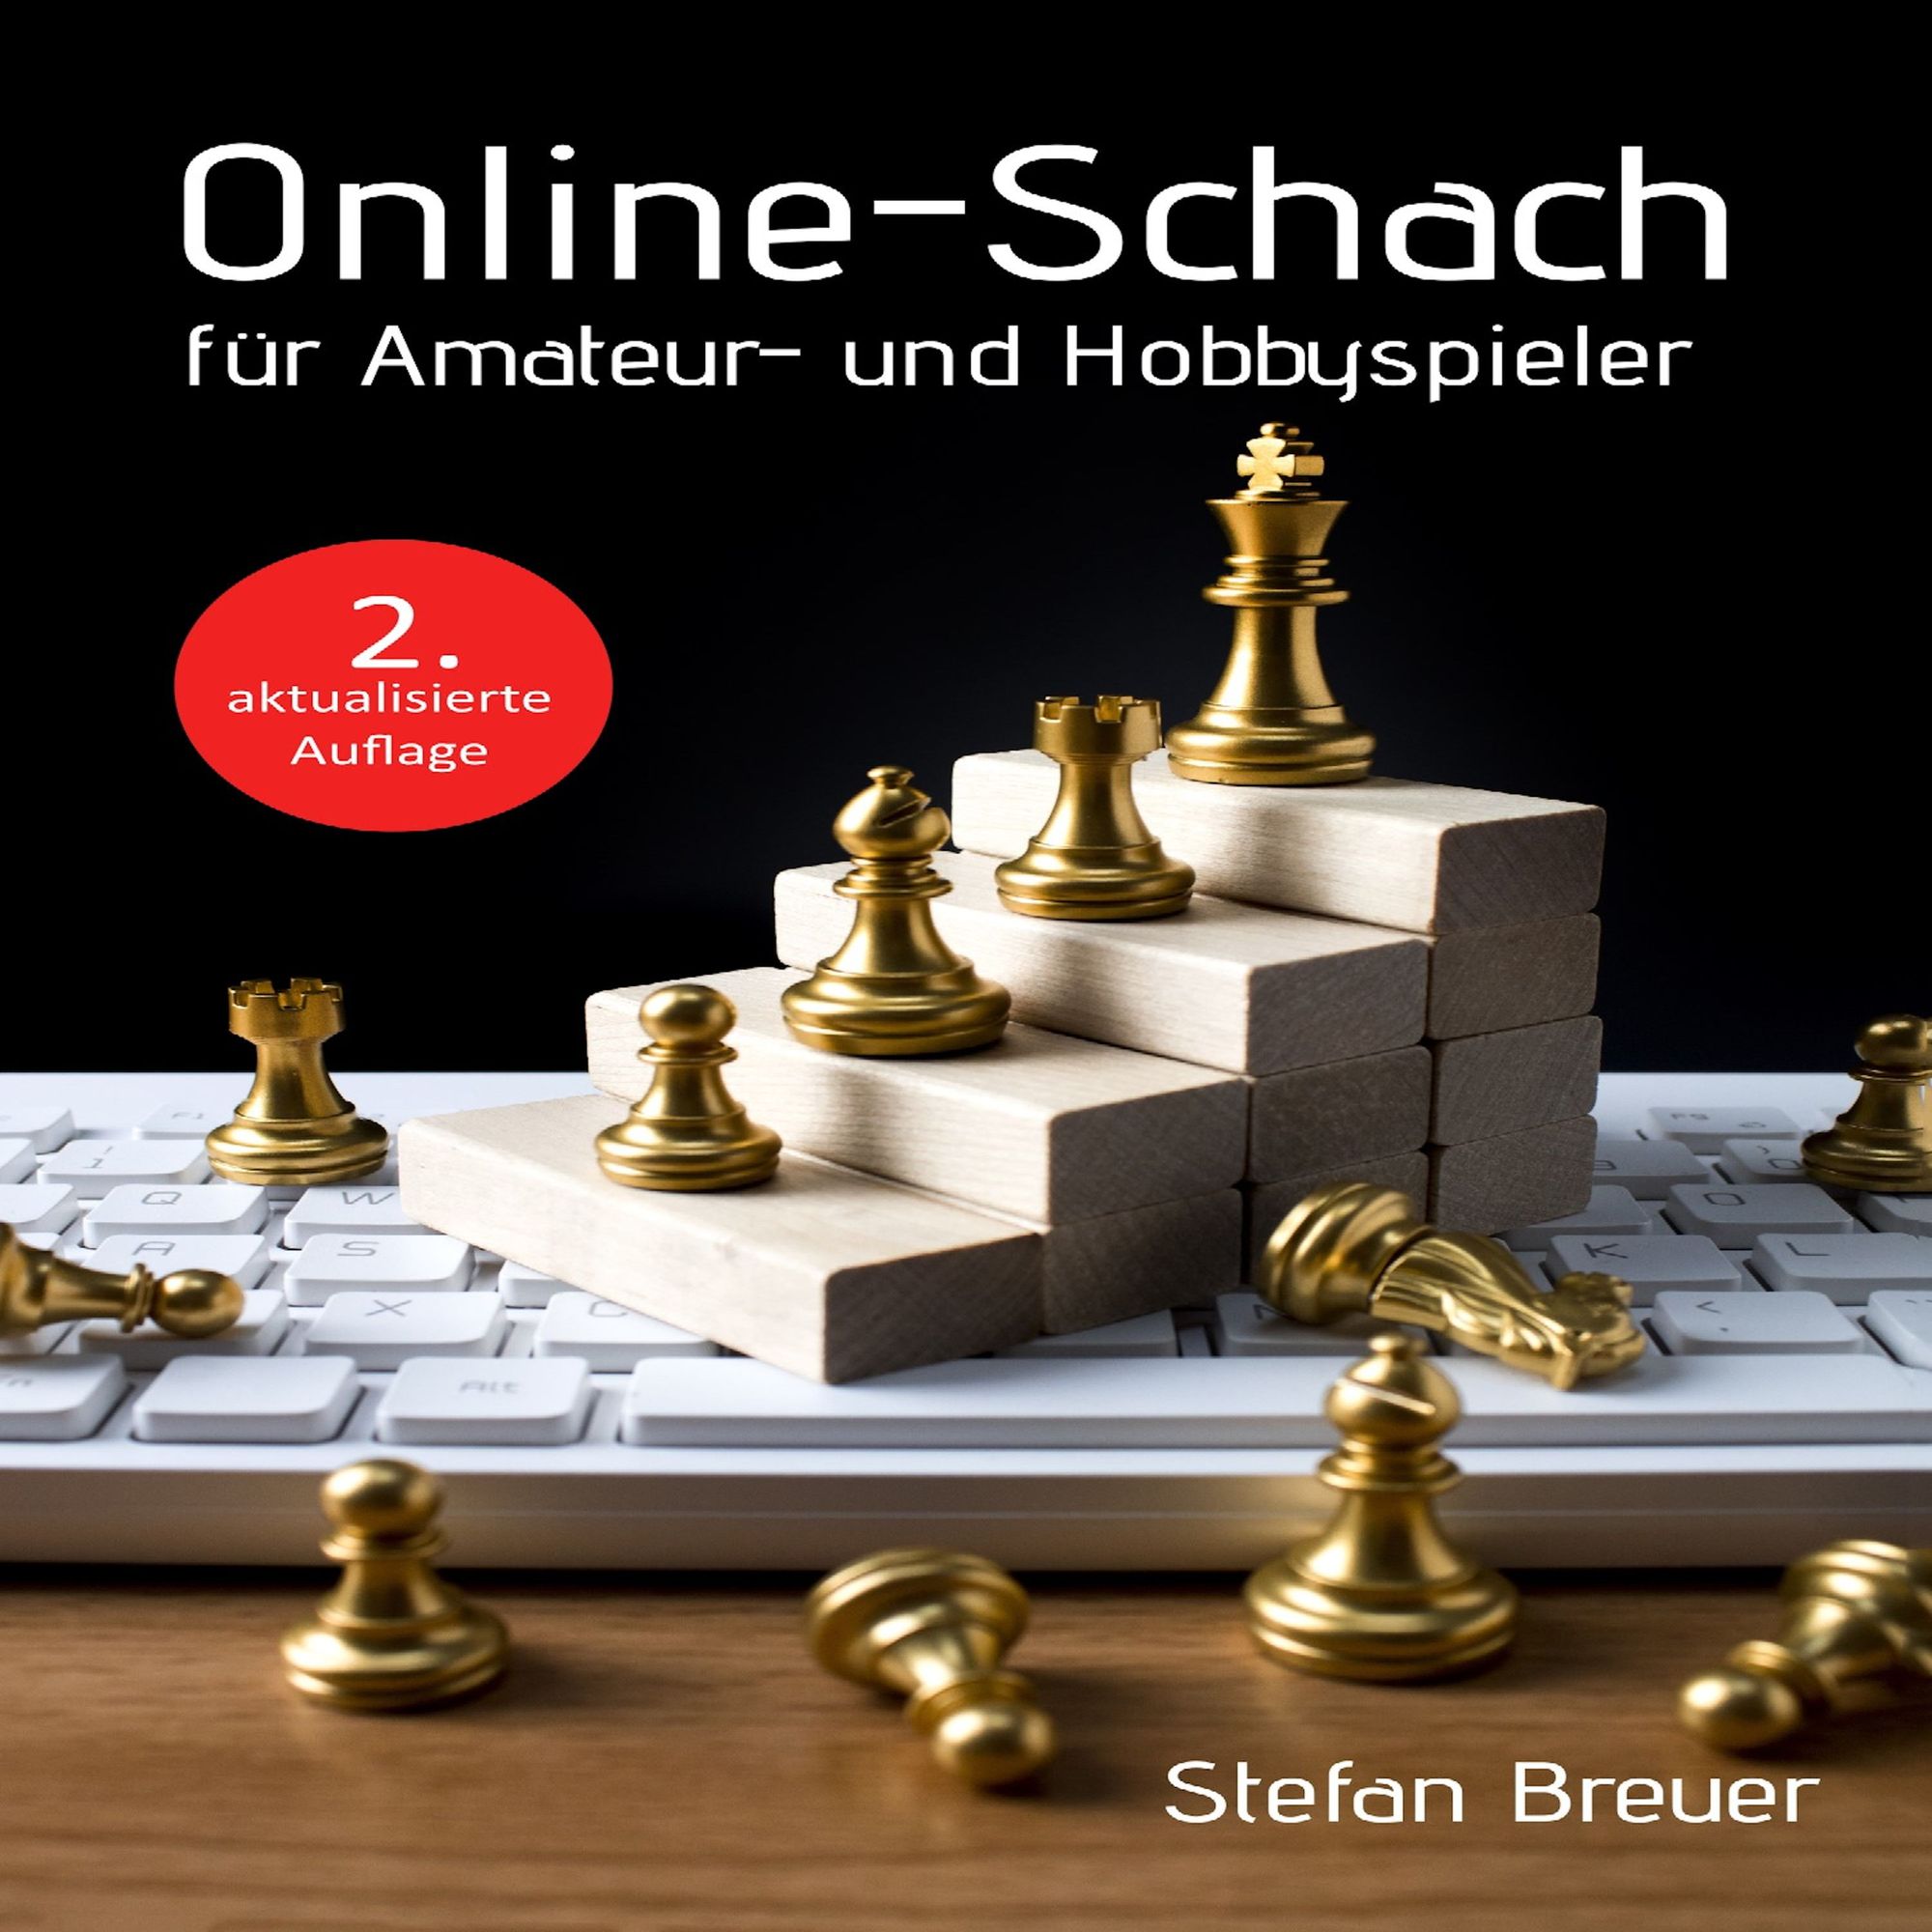 Online-Schach für Amateur- und Hobbyspieler von Stefan Breuer